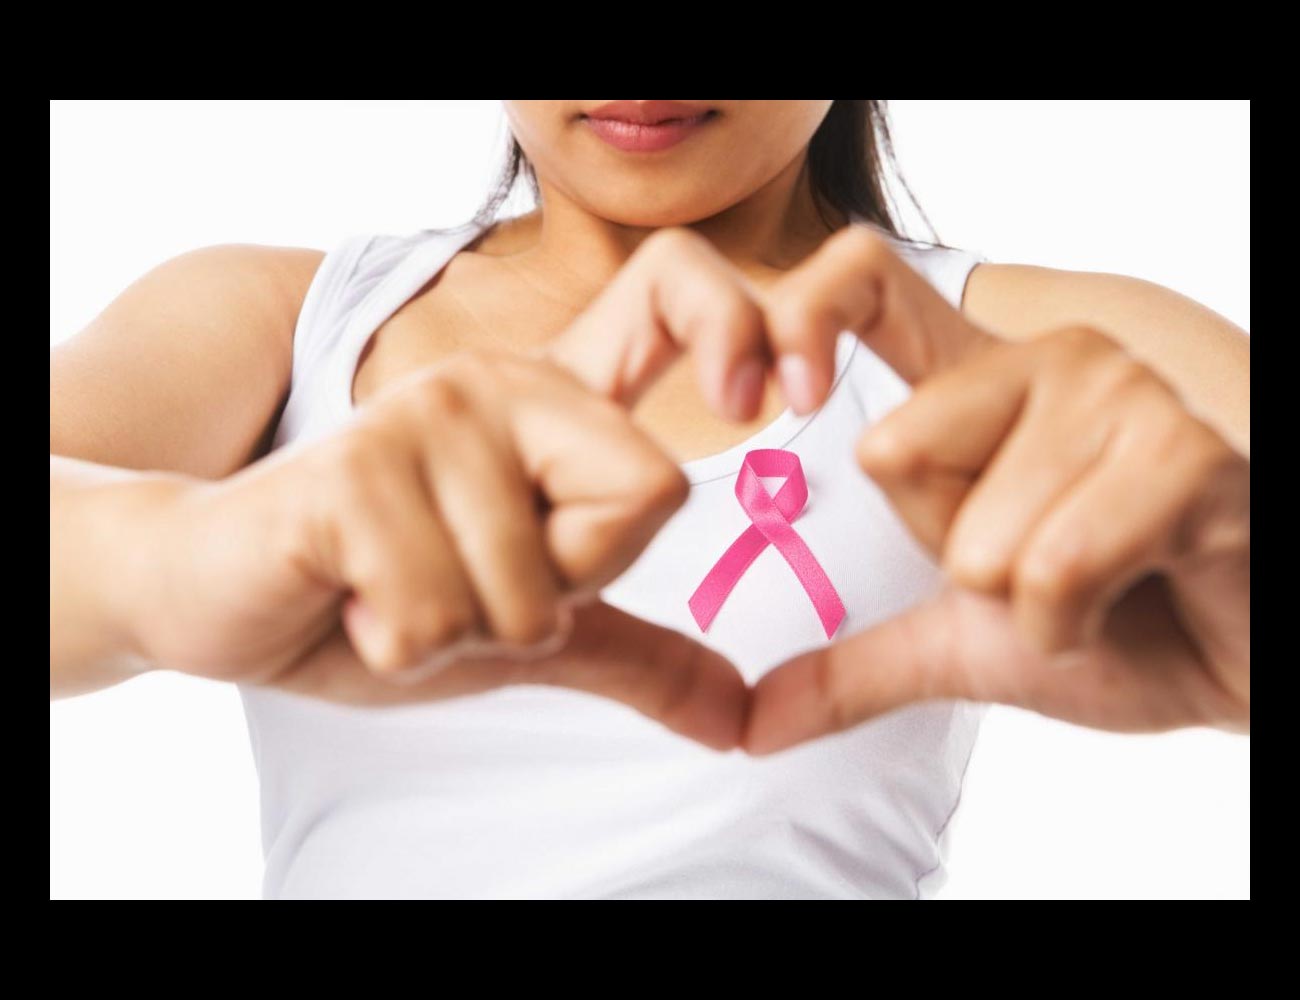 Las mujeres con el gen defectuoso BRCA1 son propensas a desarrollar tumores malignos en los senos